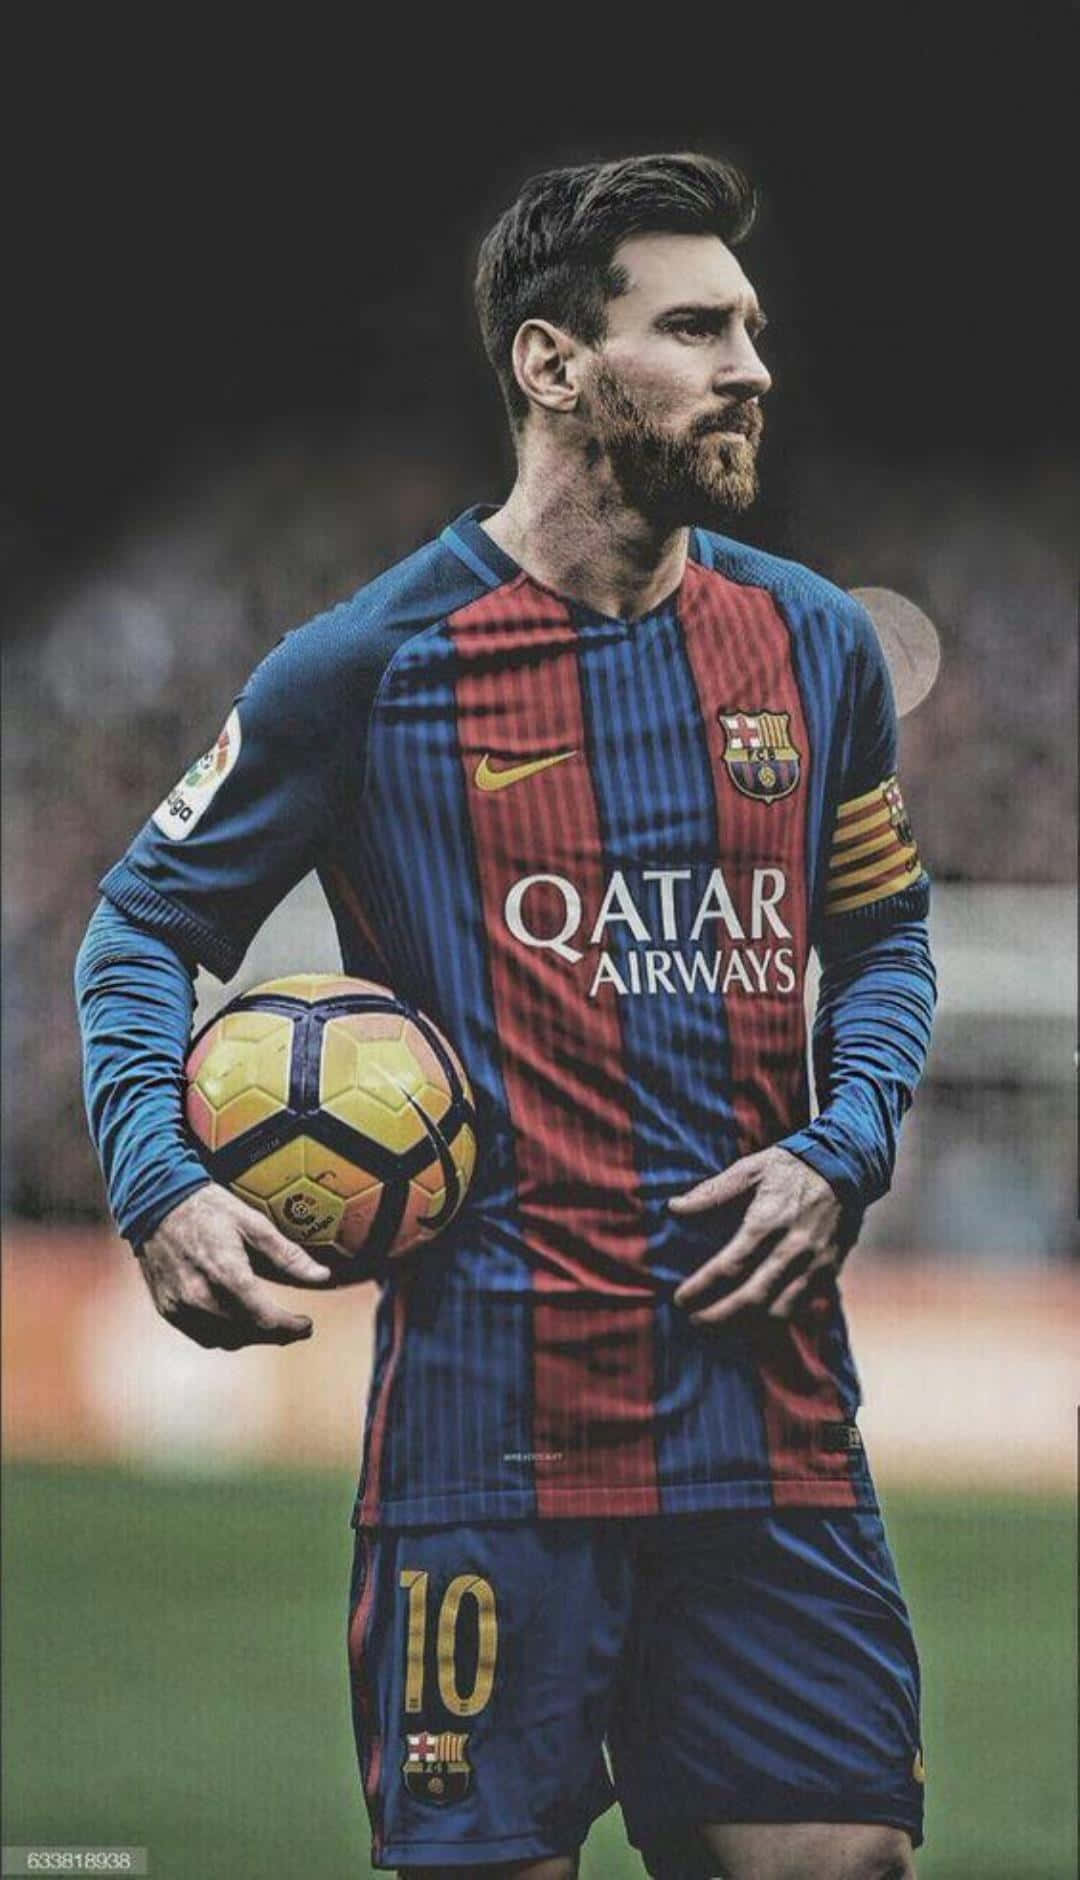 Cập nhật trang trí điện thoại của bạn với bức hình nền iPhone Lionel Messi tuyệt đẹp này. Hãy tải về và cùng chiêm ngưỡng tài năng và sự nghiệp ấn tượng của Messi.